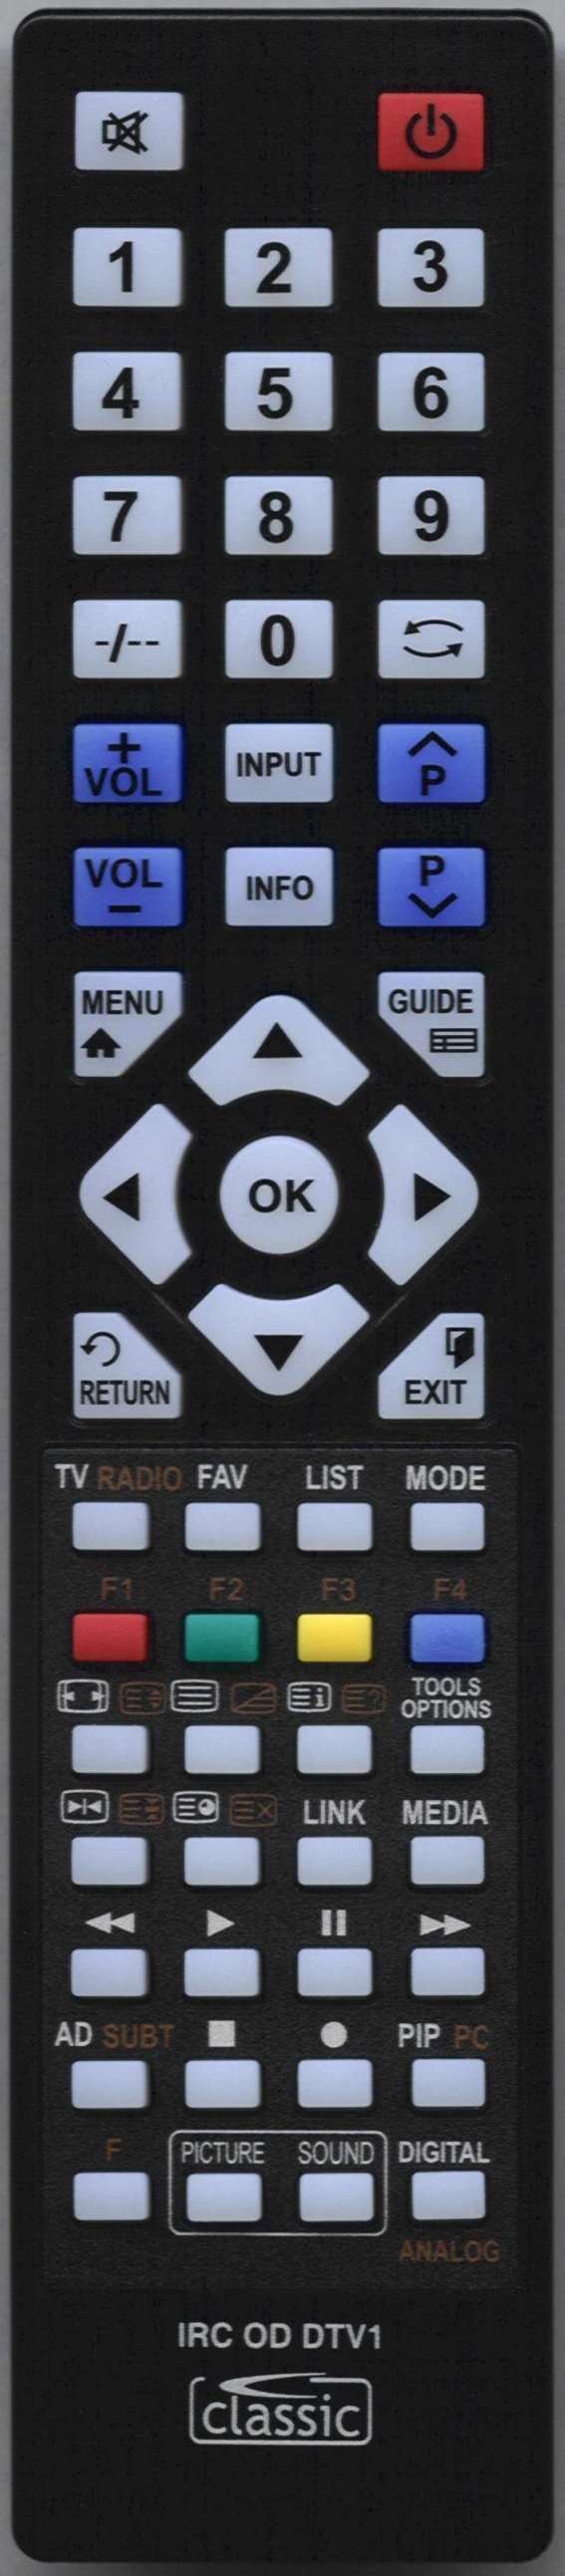 Lenco STC 9505 Remote Control